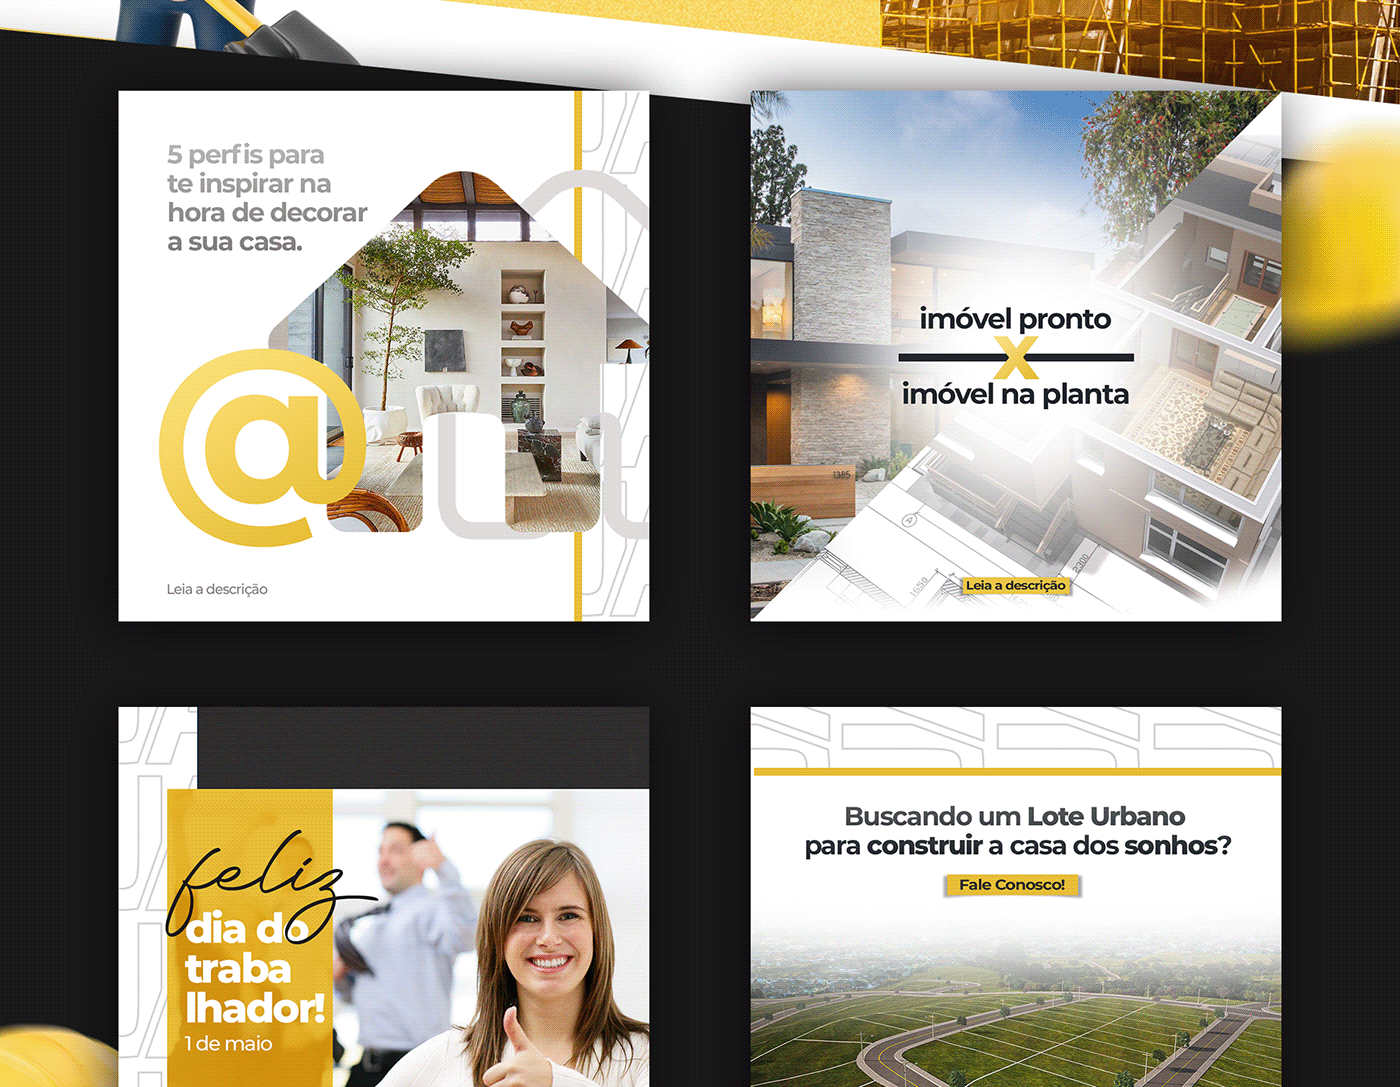 construction company construtora engenhariacivil instagram social media imobiliária imóveis